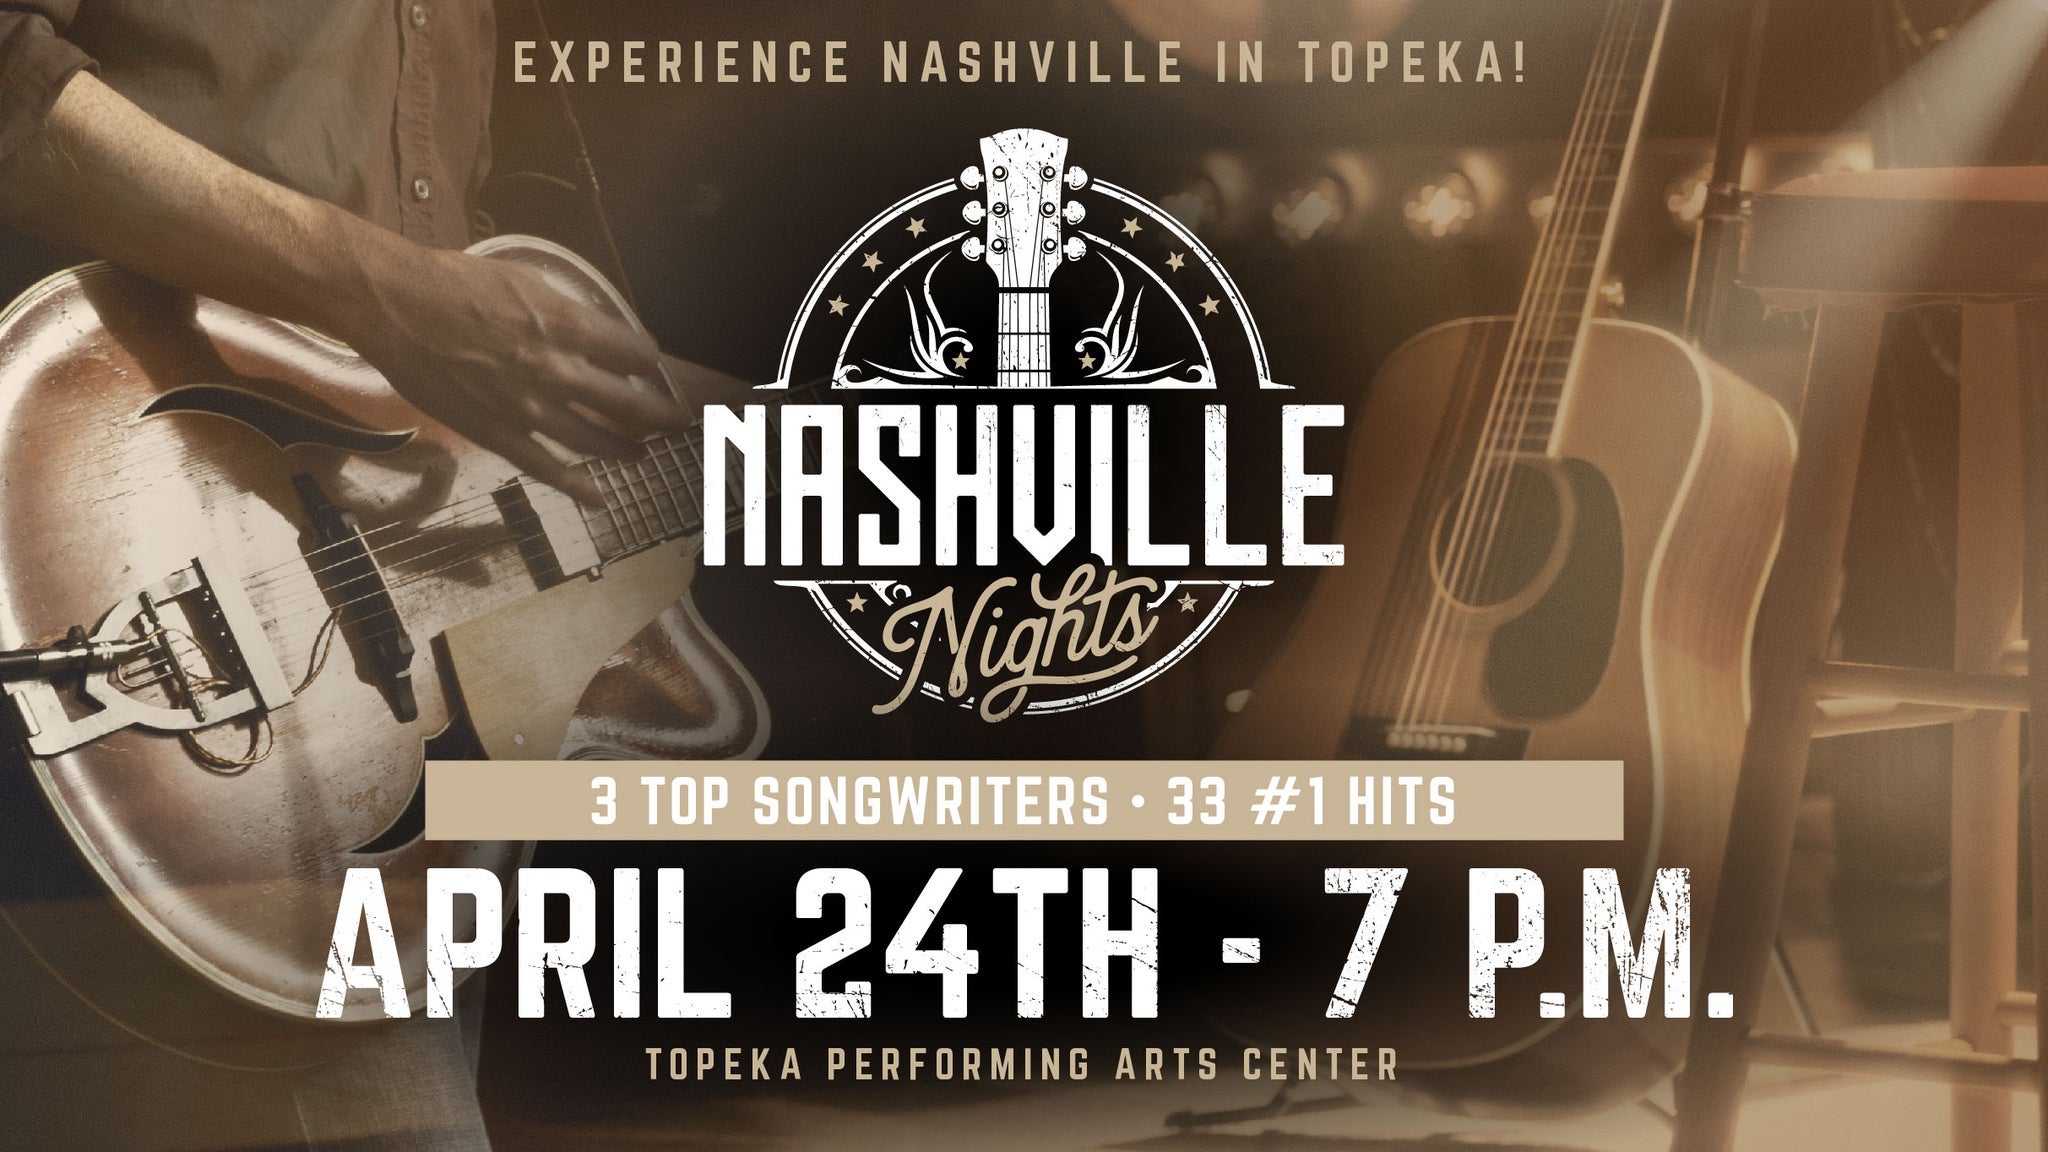 Nashville Nights at Topeka Performing Arts Center